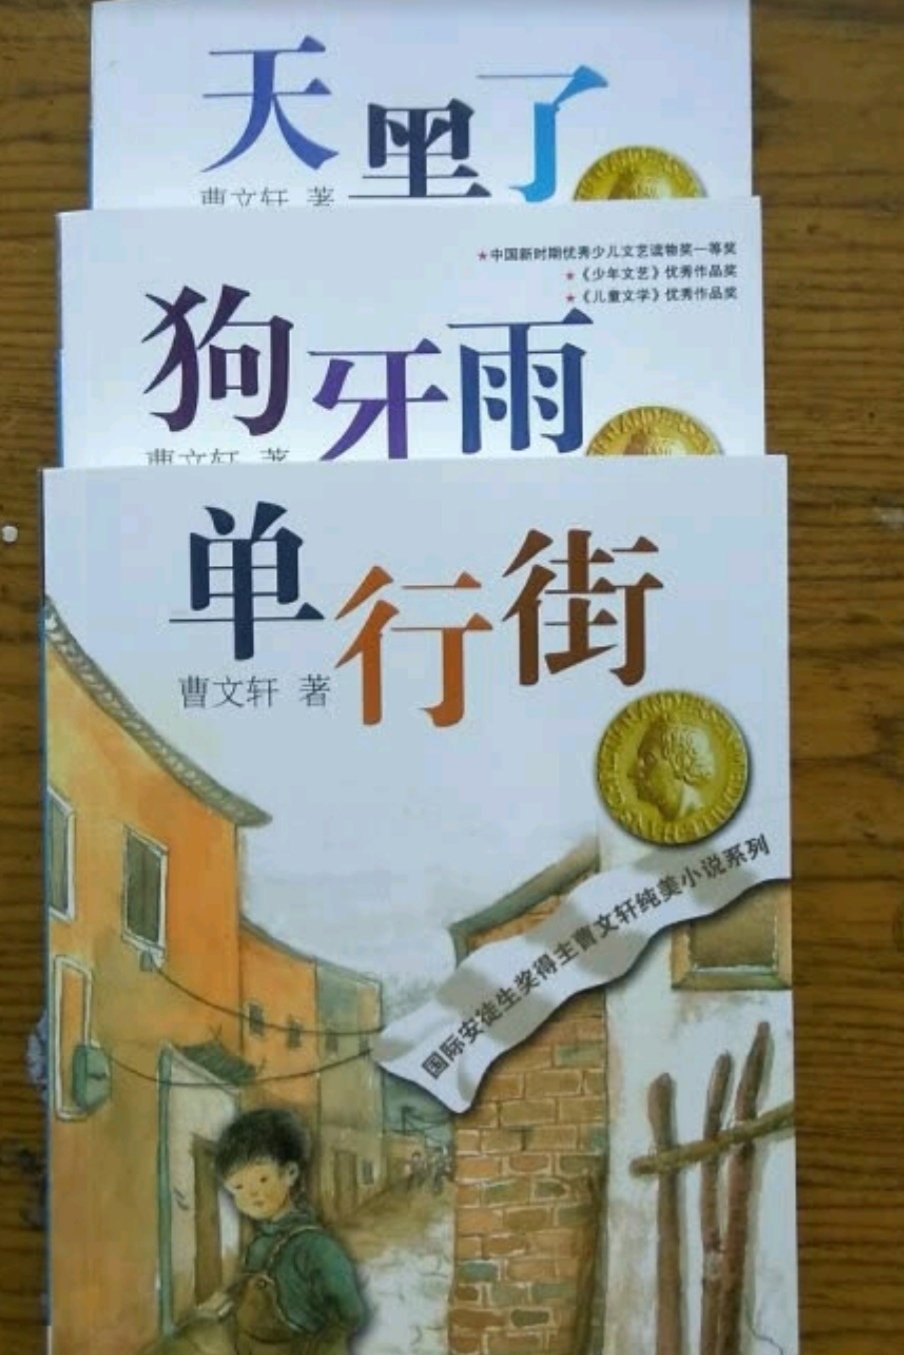 曹文轩的小说还是很有意思的，感人